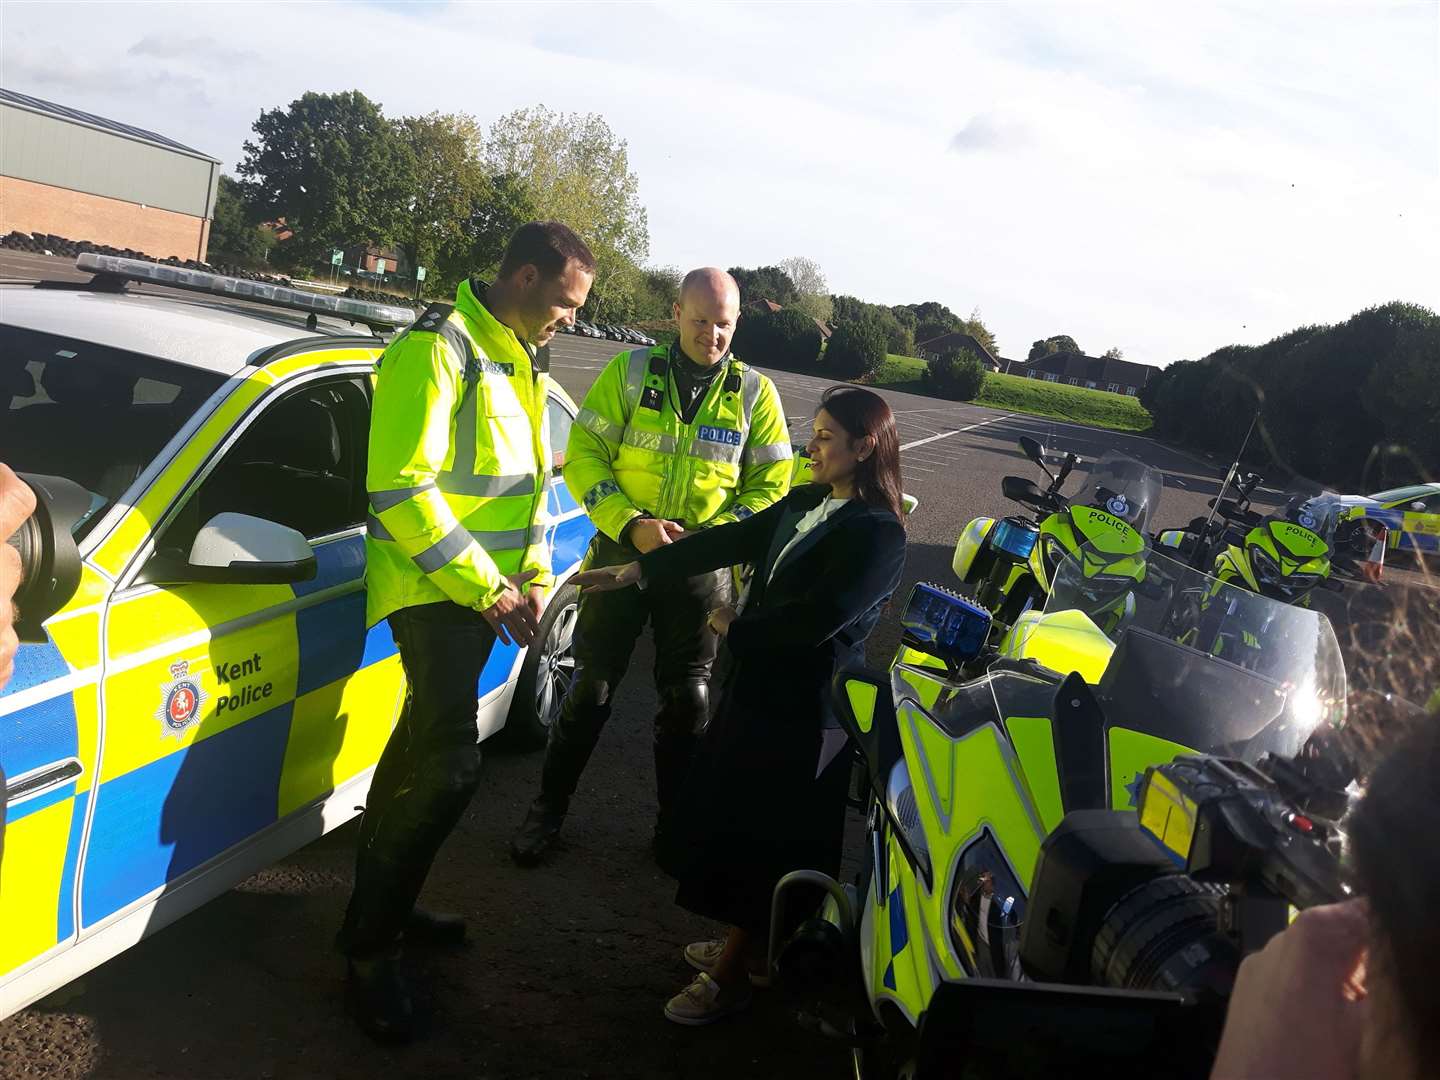 Priti Patel meeting police officers in Kent yesterday